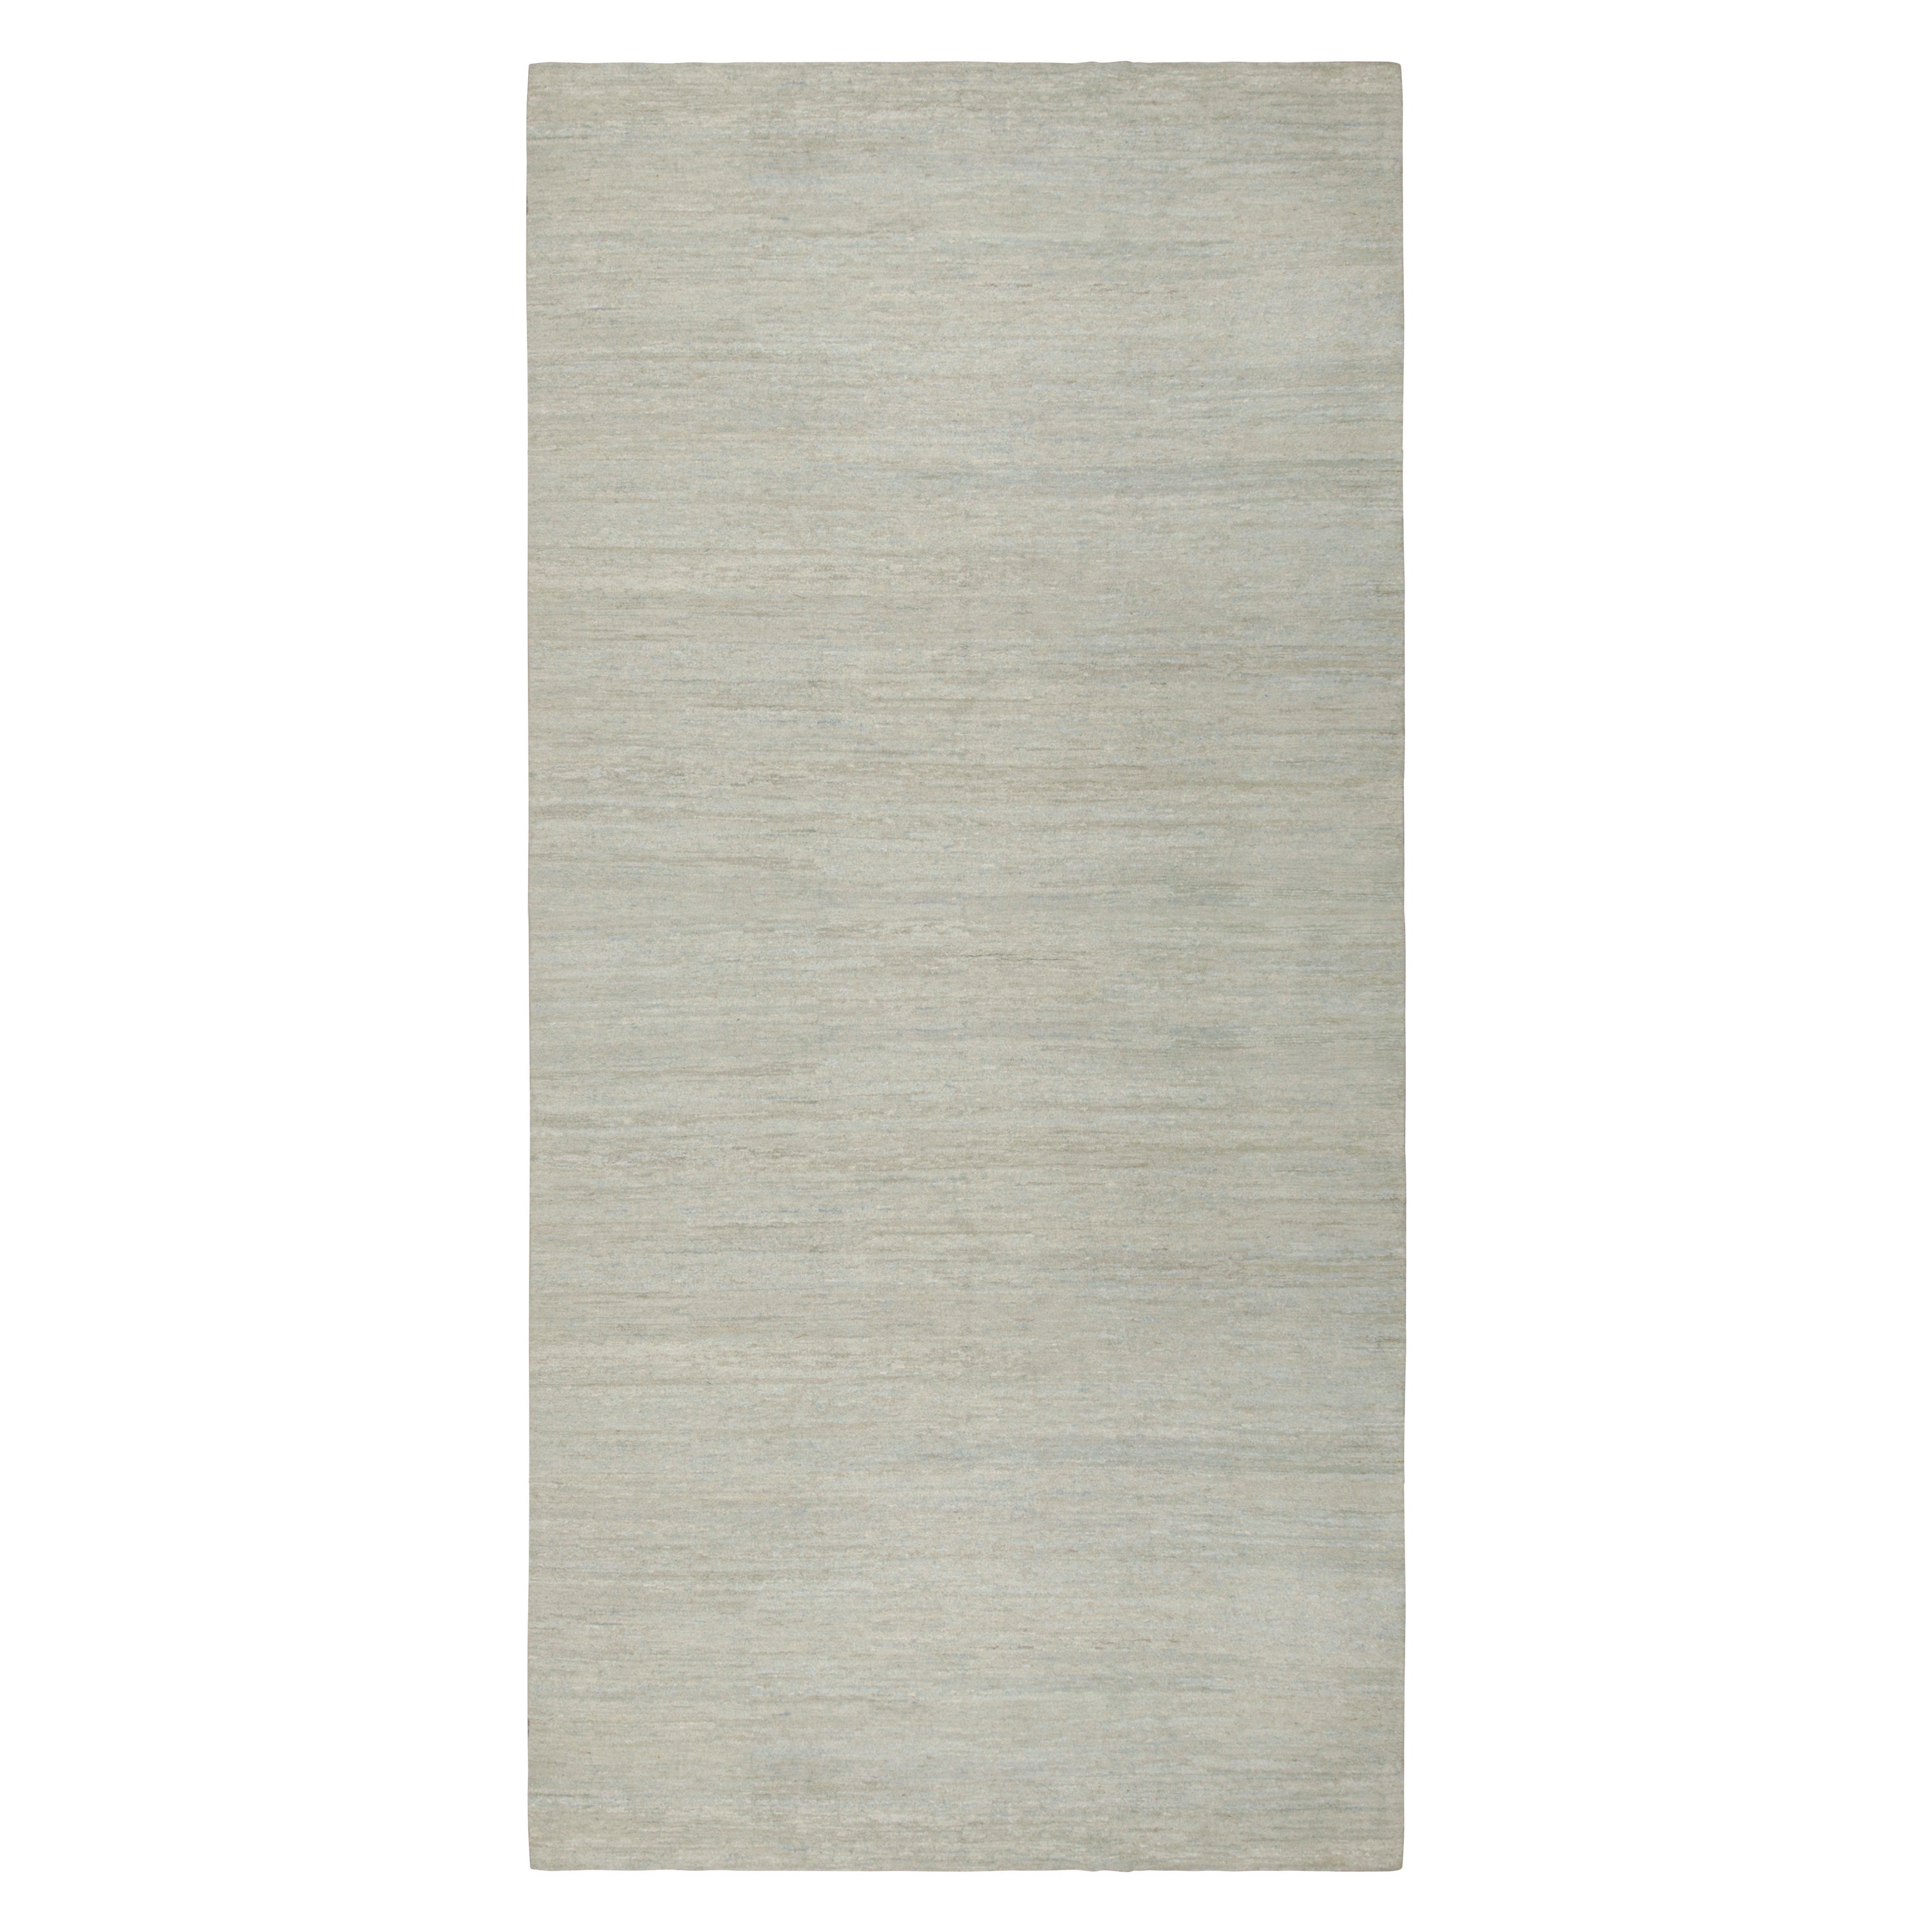 Noué à la main en laine, ce tapis contemporain 9x17 en beige et gris, qui vient s'ajouter à la collection Rug & Kilim Textural, est une version inventive des tapis solides, dont les rayures subtiles apportent du mouvement. 

Sur le Design : 

La